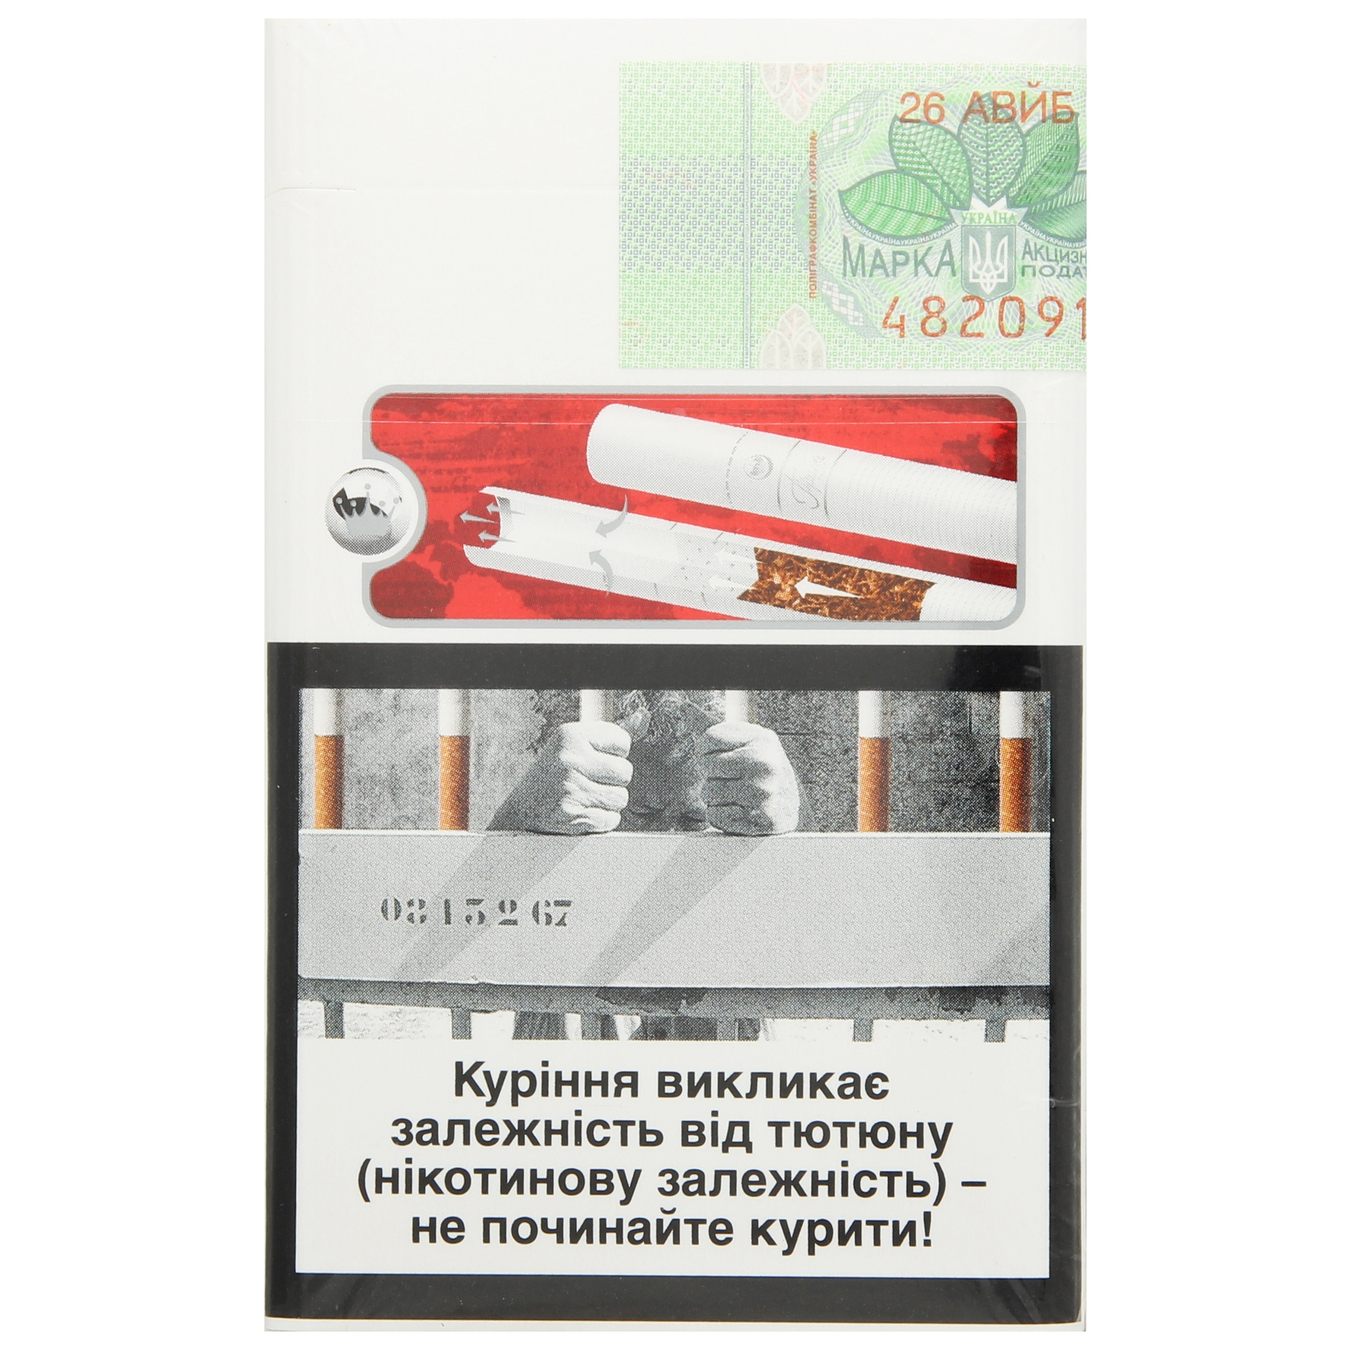 Сигареты Прима Люкс 20шт (цена указана без акциза) 2